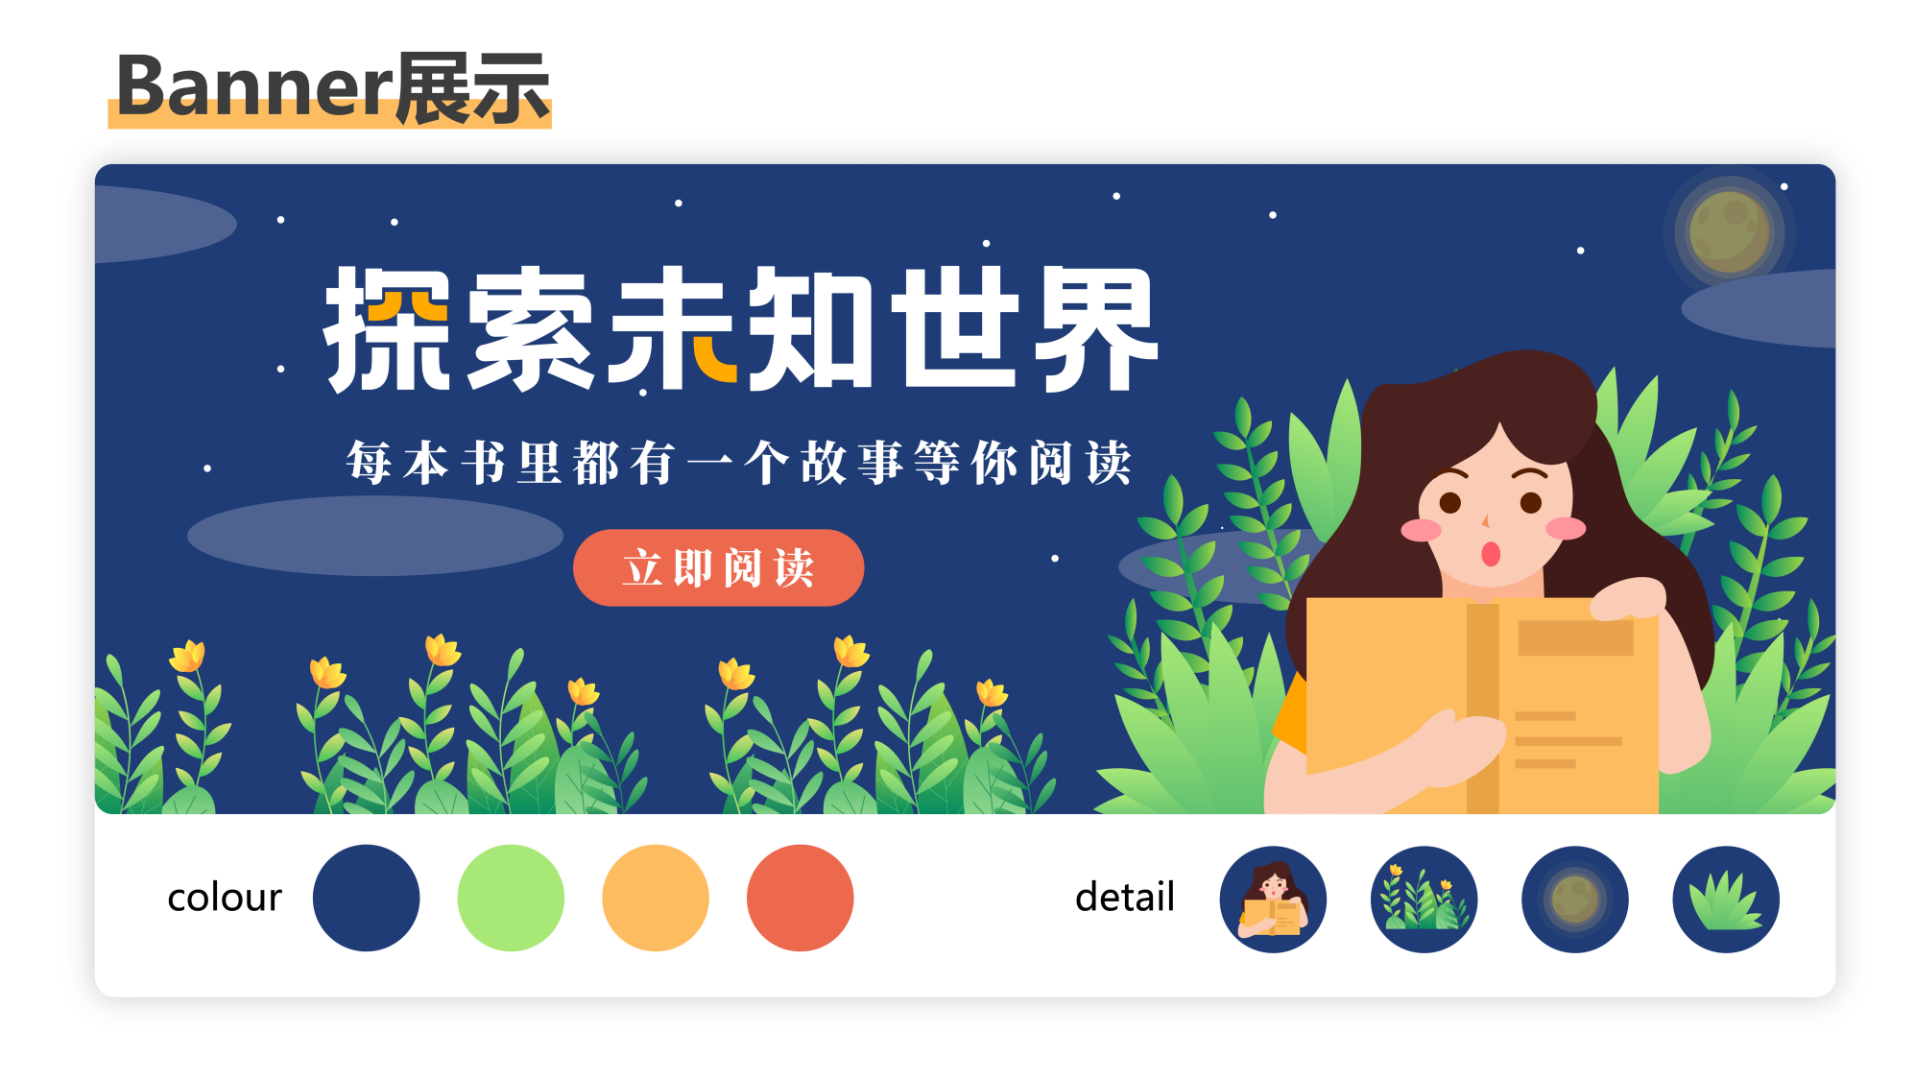 晋江app的背景壁纸图片